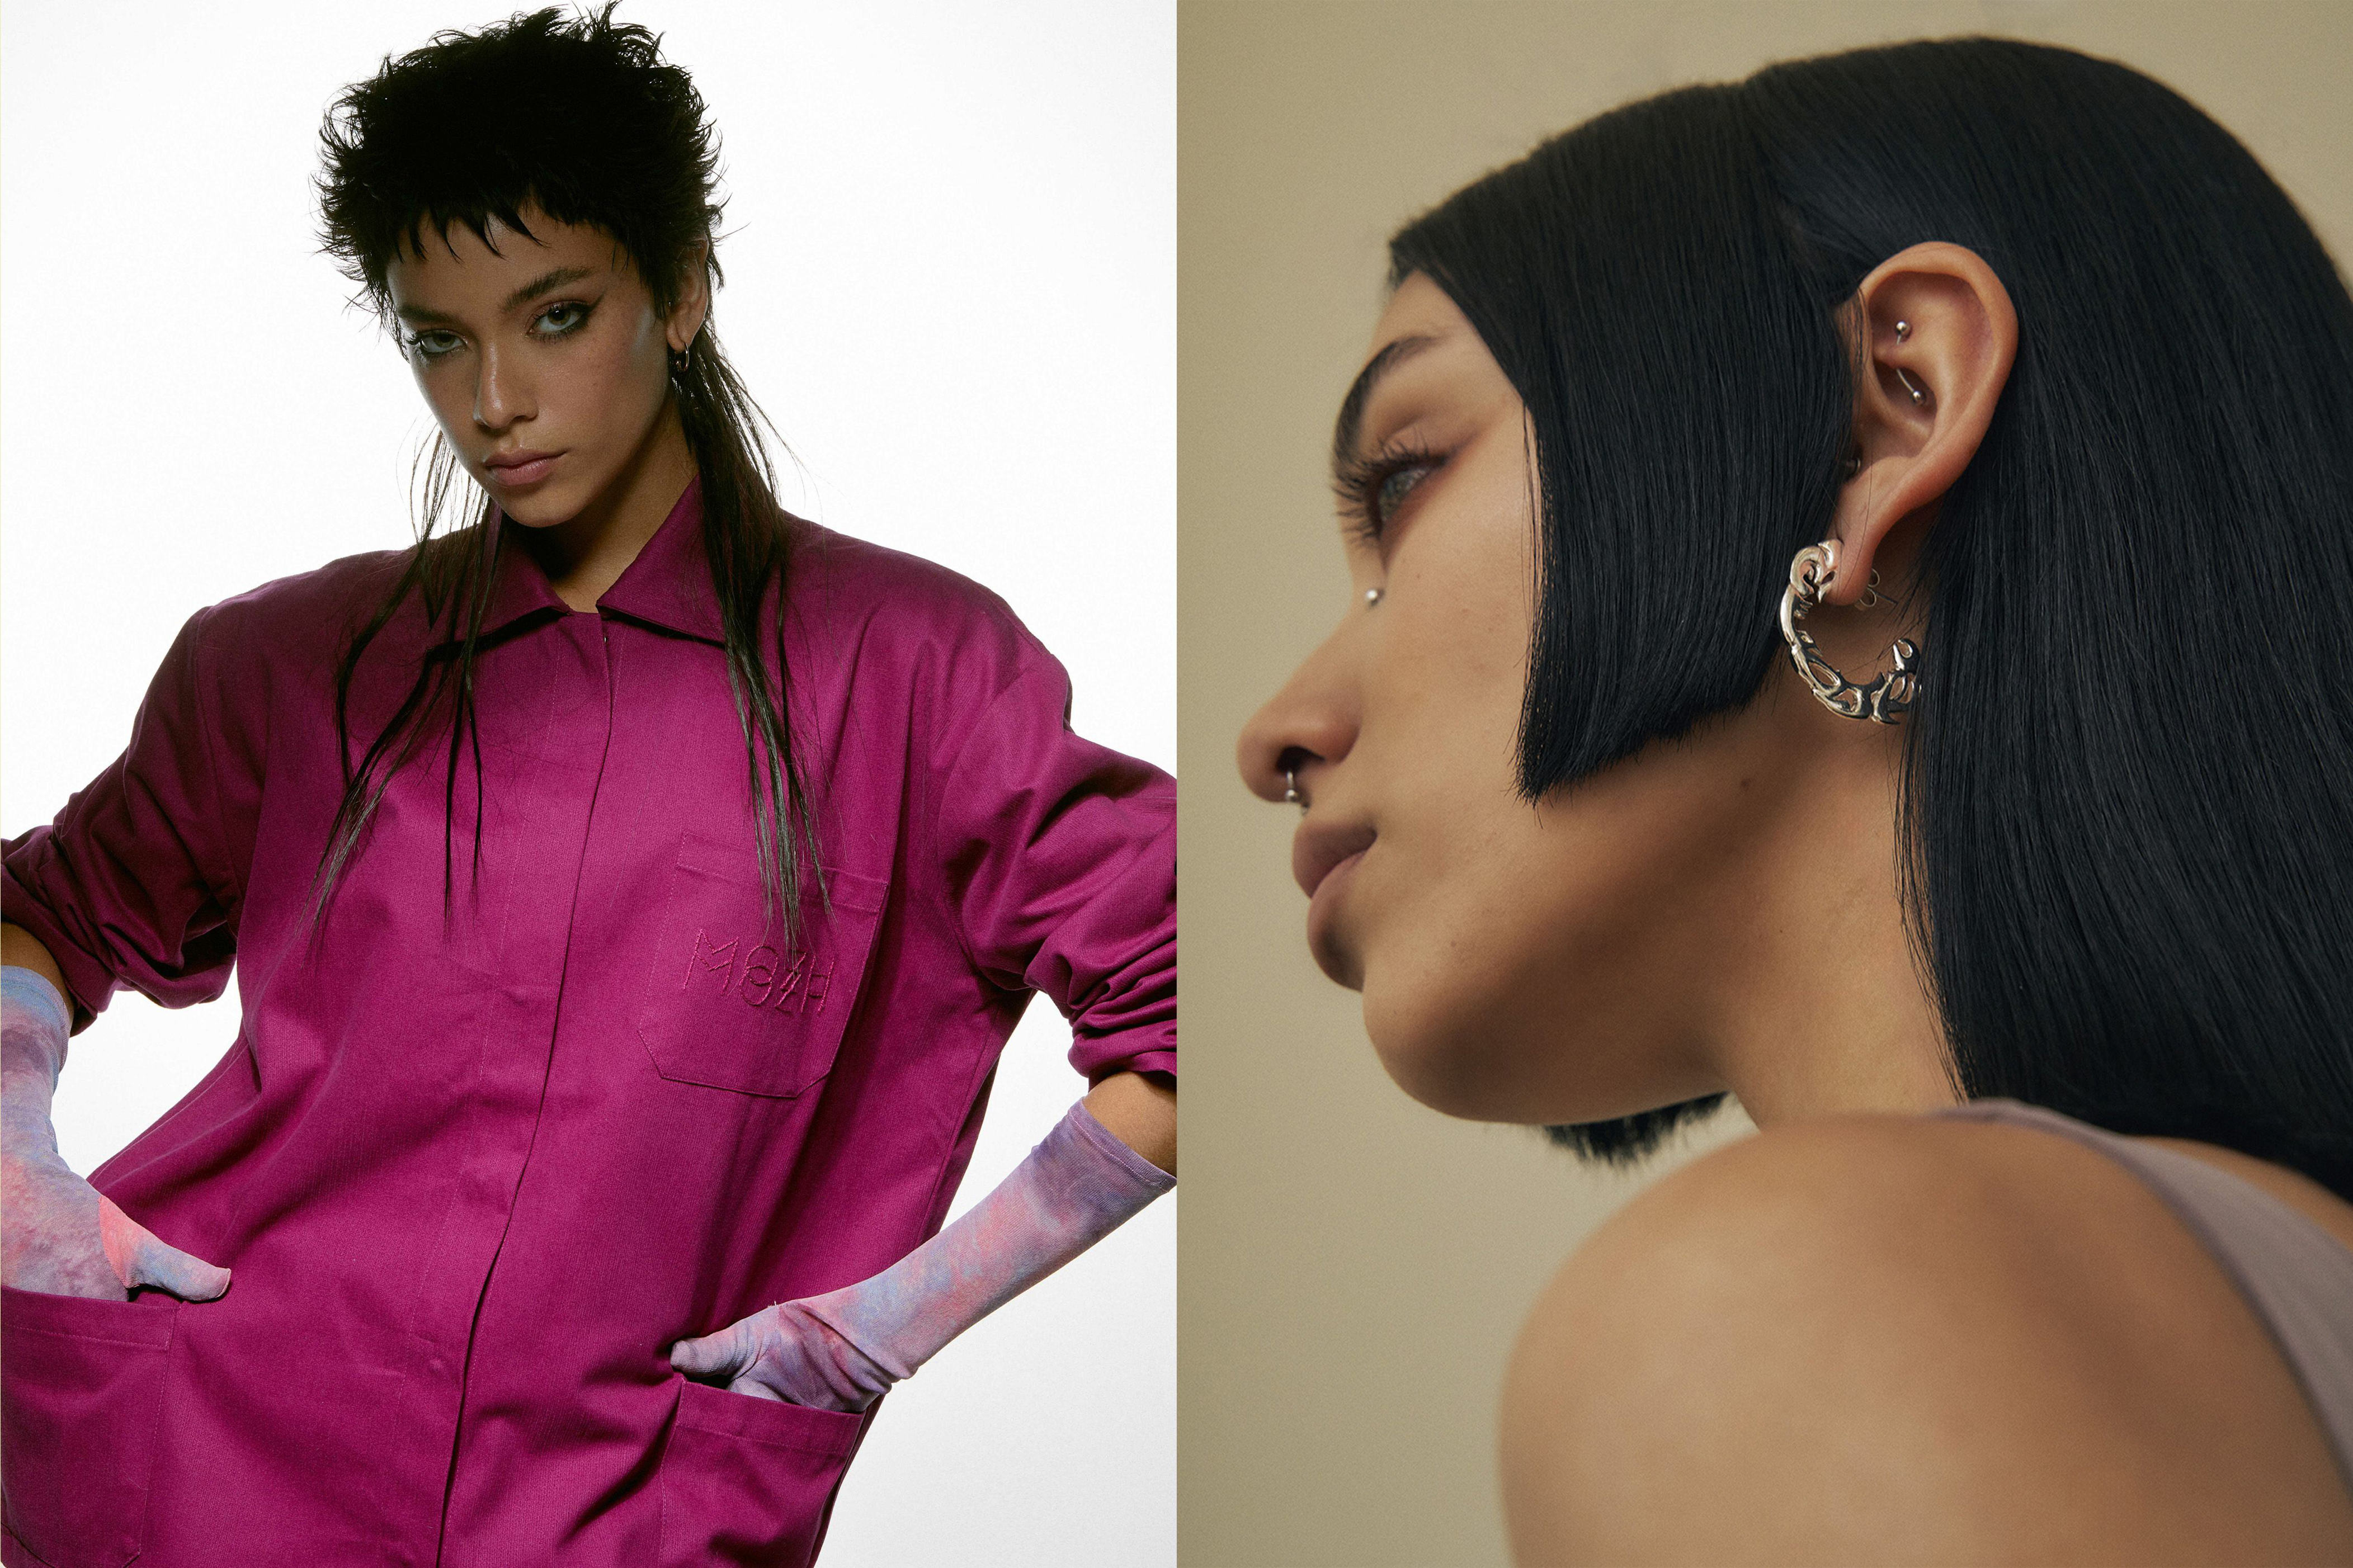 “aquí persisten con fuerza los estereotipos de belleza”: el relato de dos modelos chilenas en asia